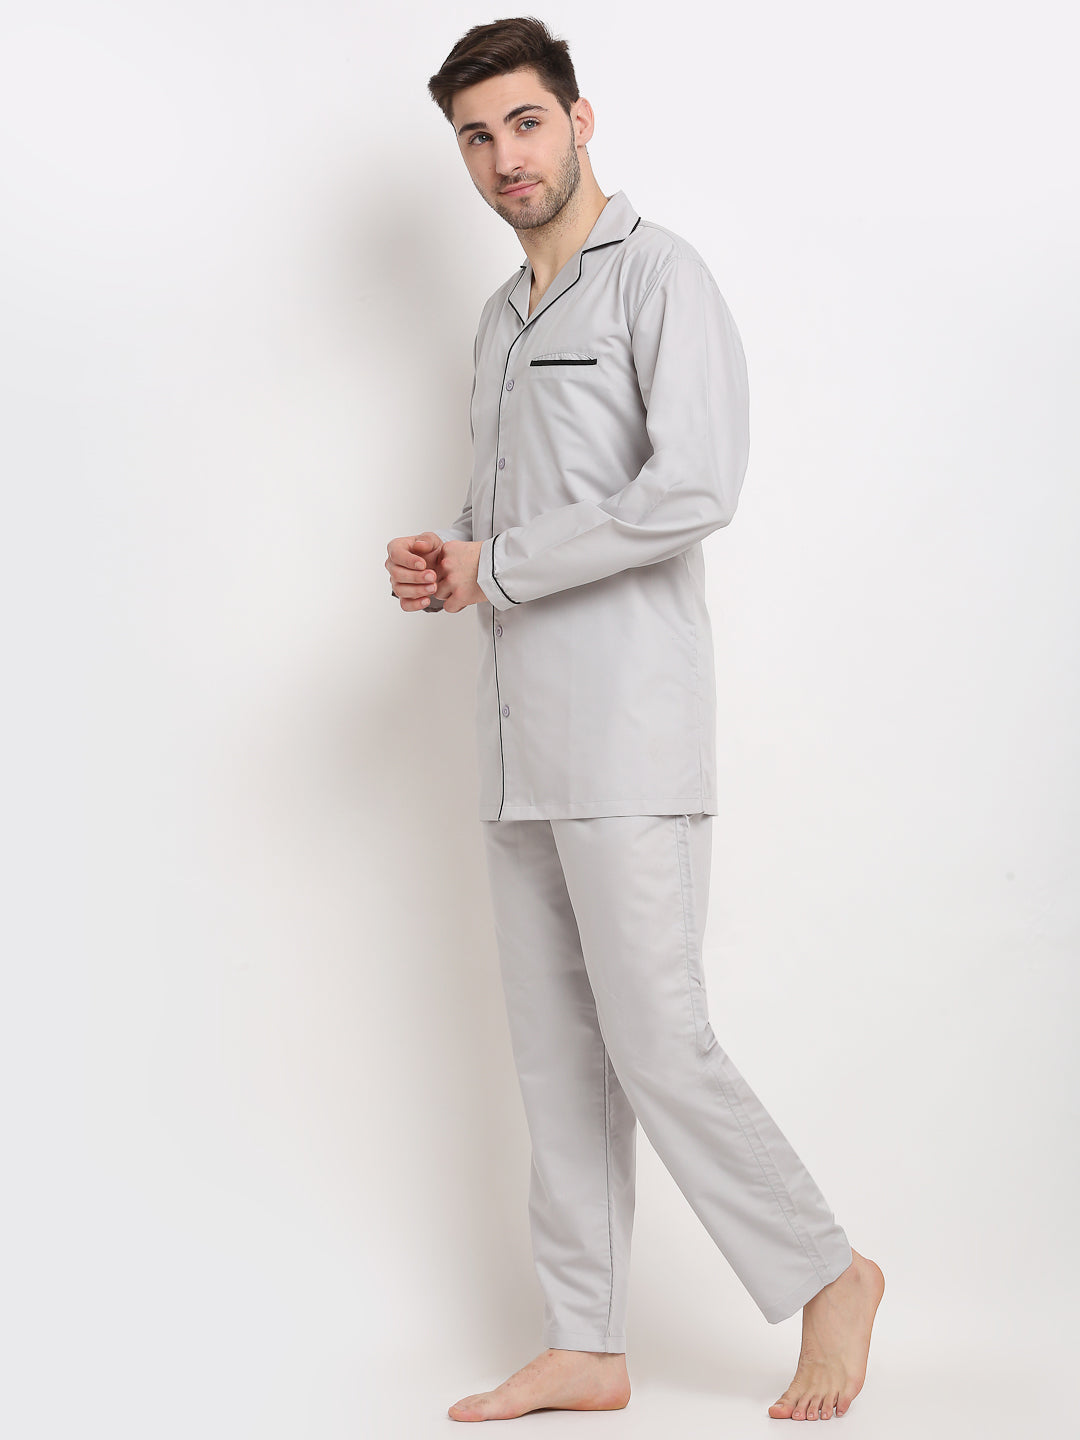 Men's Steel-Grey Cotton Solid Night Suits ( GNS 003Steel-Grey ) - Jainish